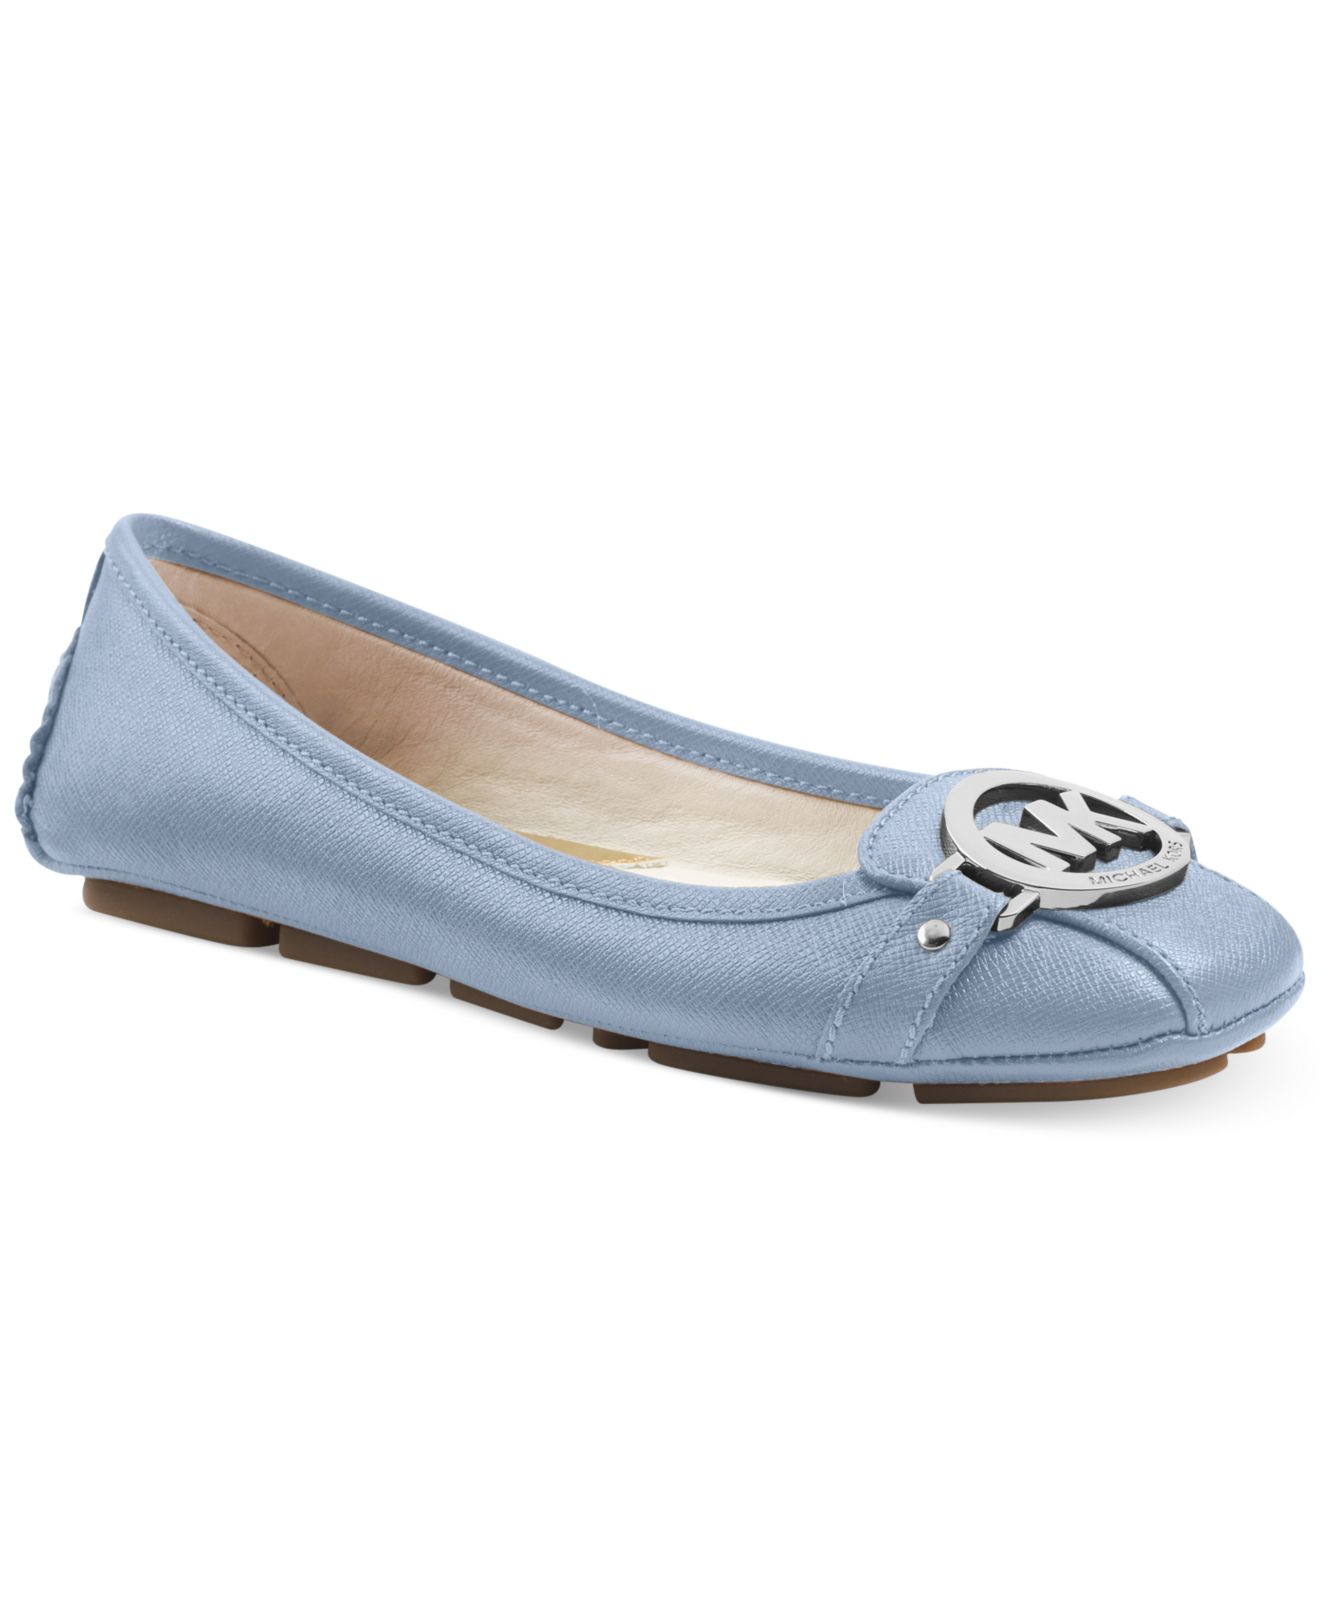 michael kors shoes blue limited edition purse - Marwood VeneerMarwood Veneer